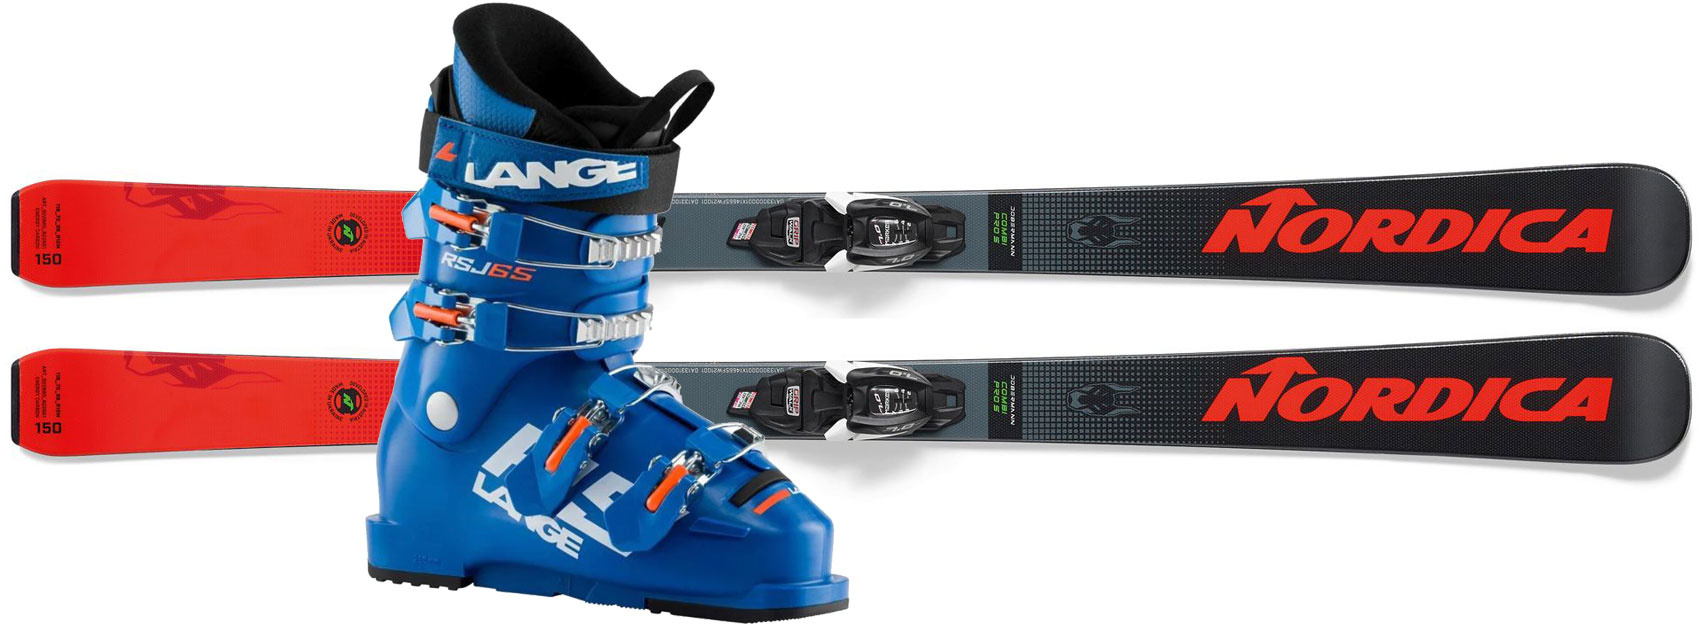 Junior Race Ski Lease Package 2